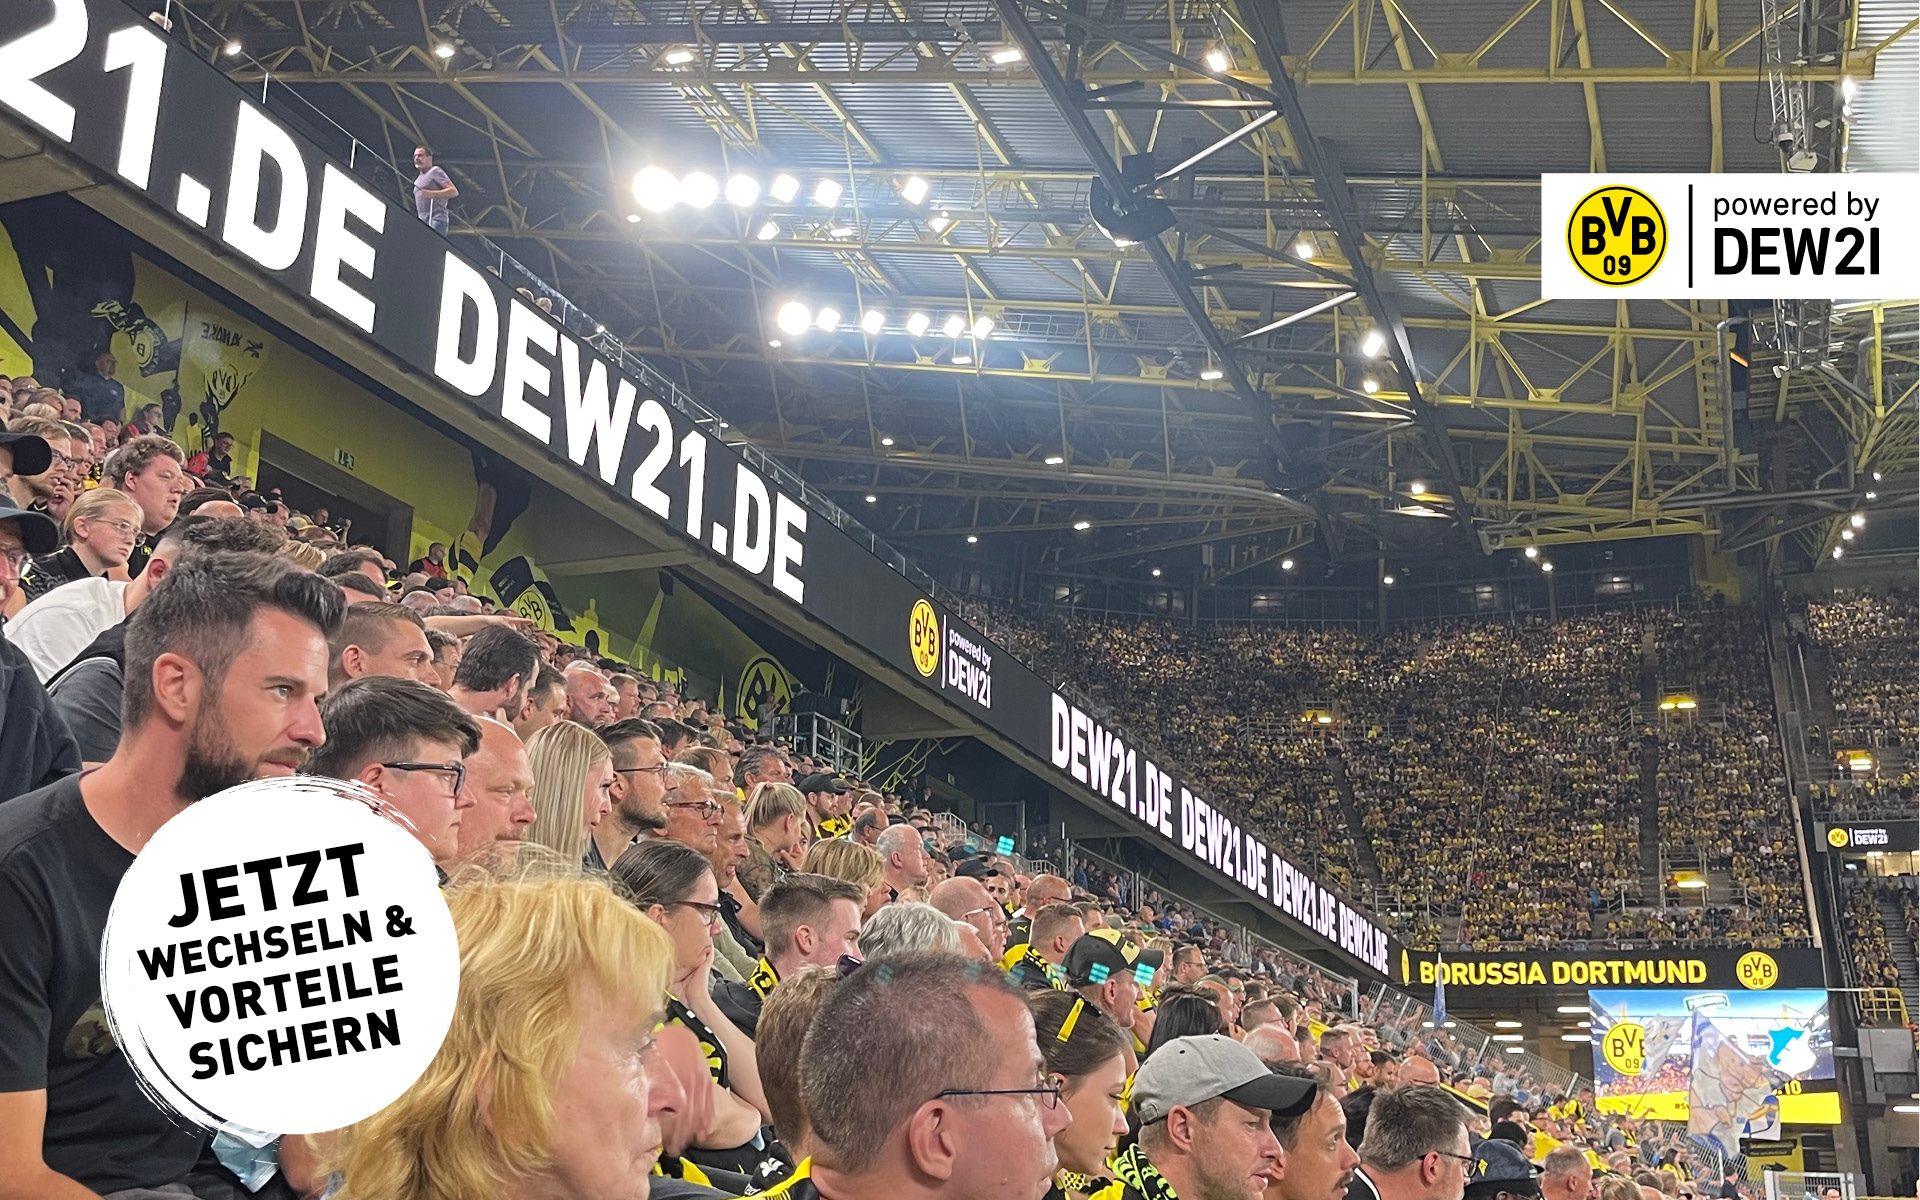 Auf den Zuschauertribünen im Stadion sitzen Fans und schauen gespannt aufs Spielfeld. Durch die Partnerschaft des BVB und der DEW21 profitieren sie von vielen Vorteilen.